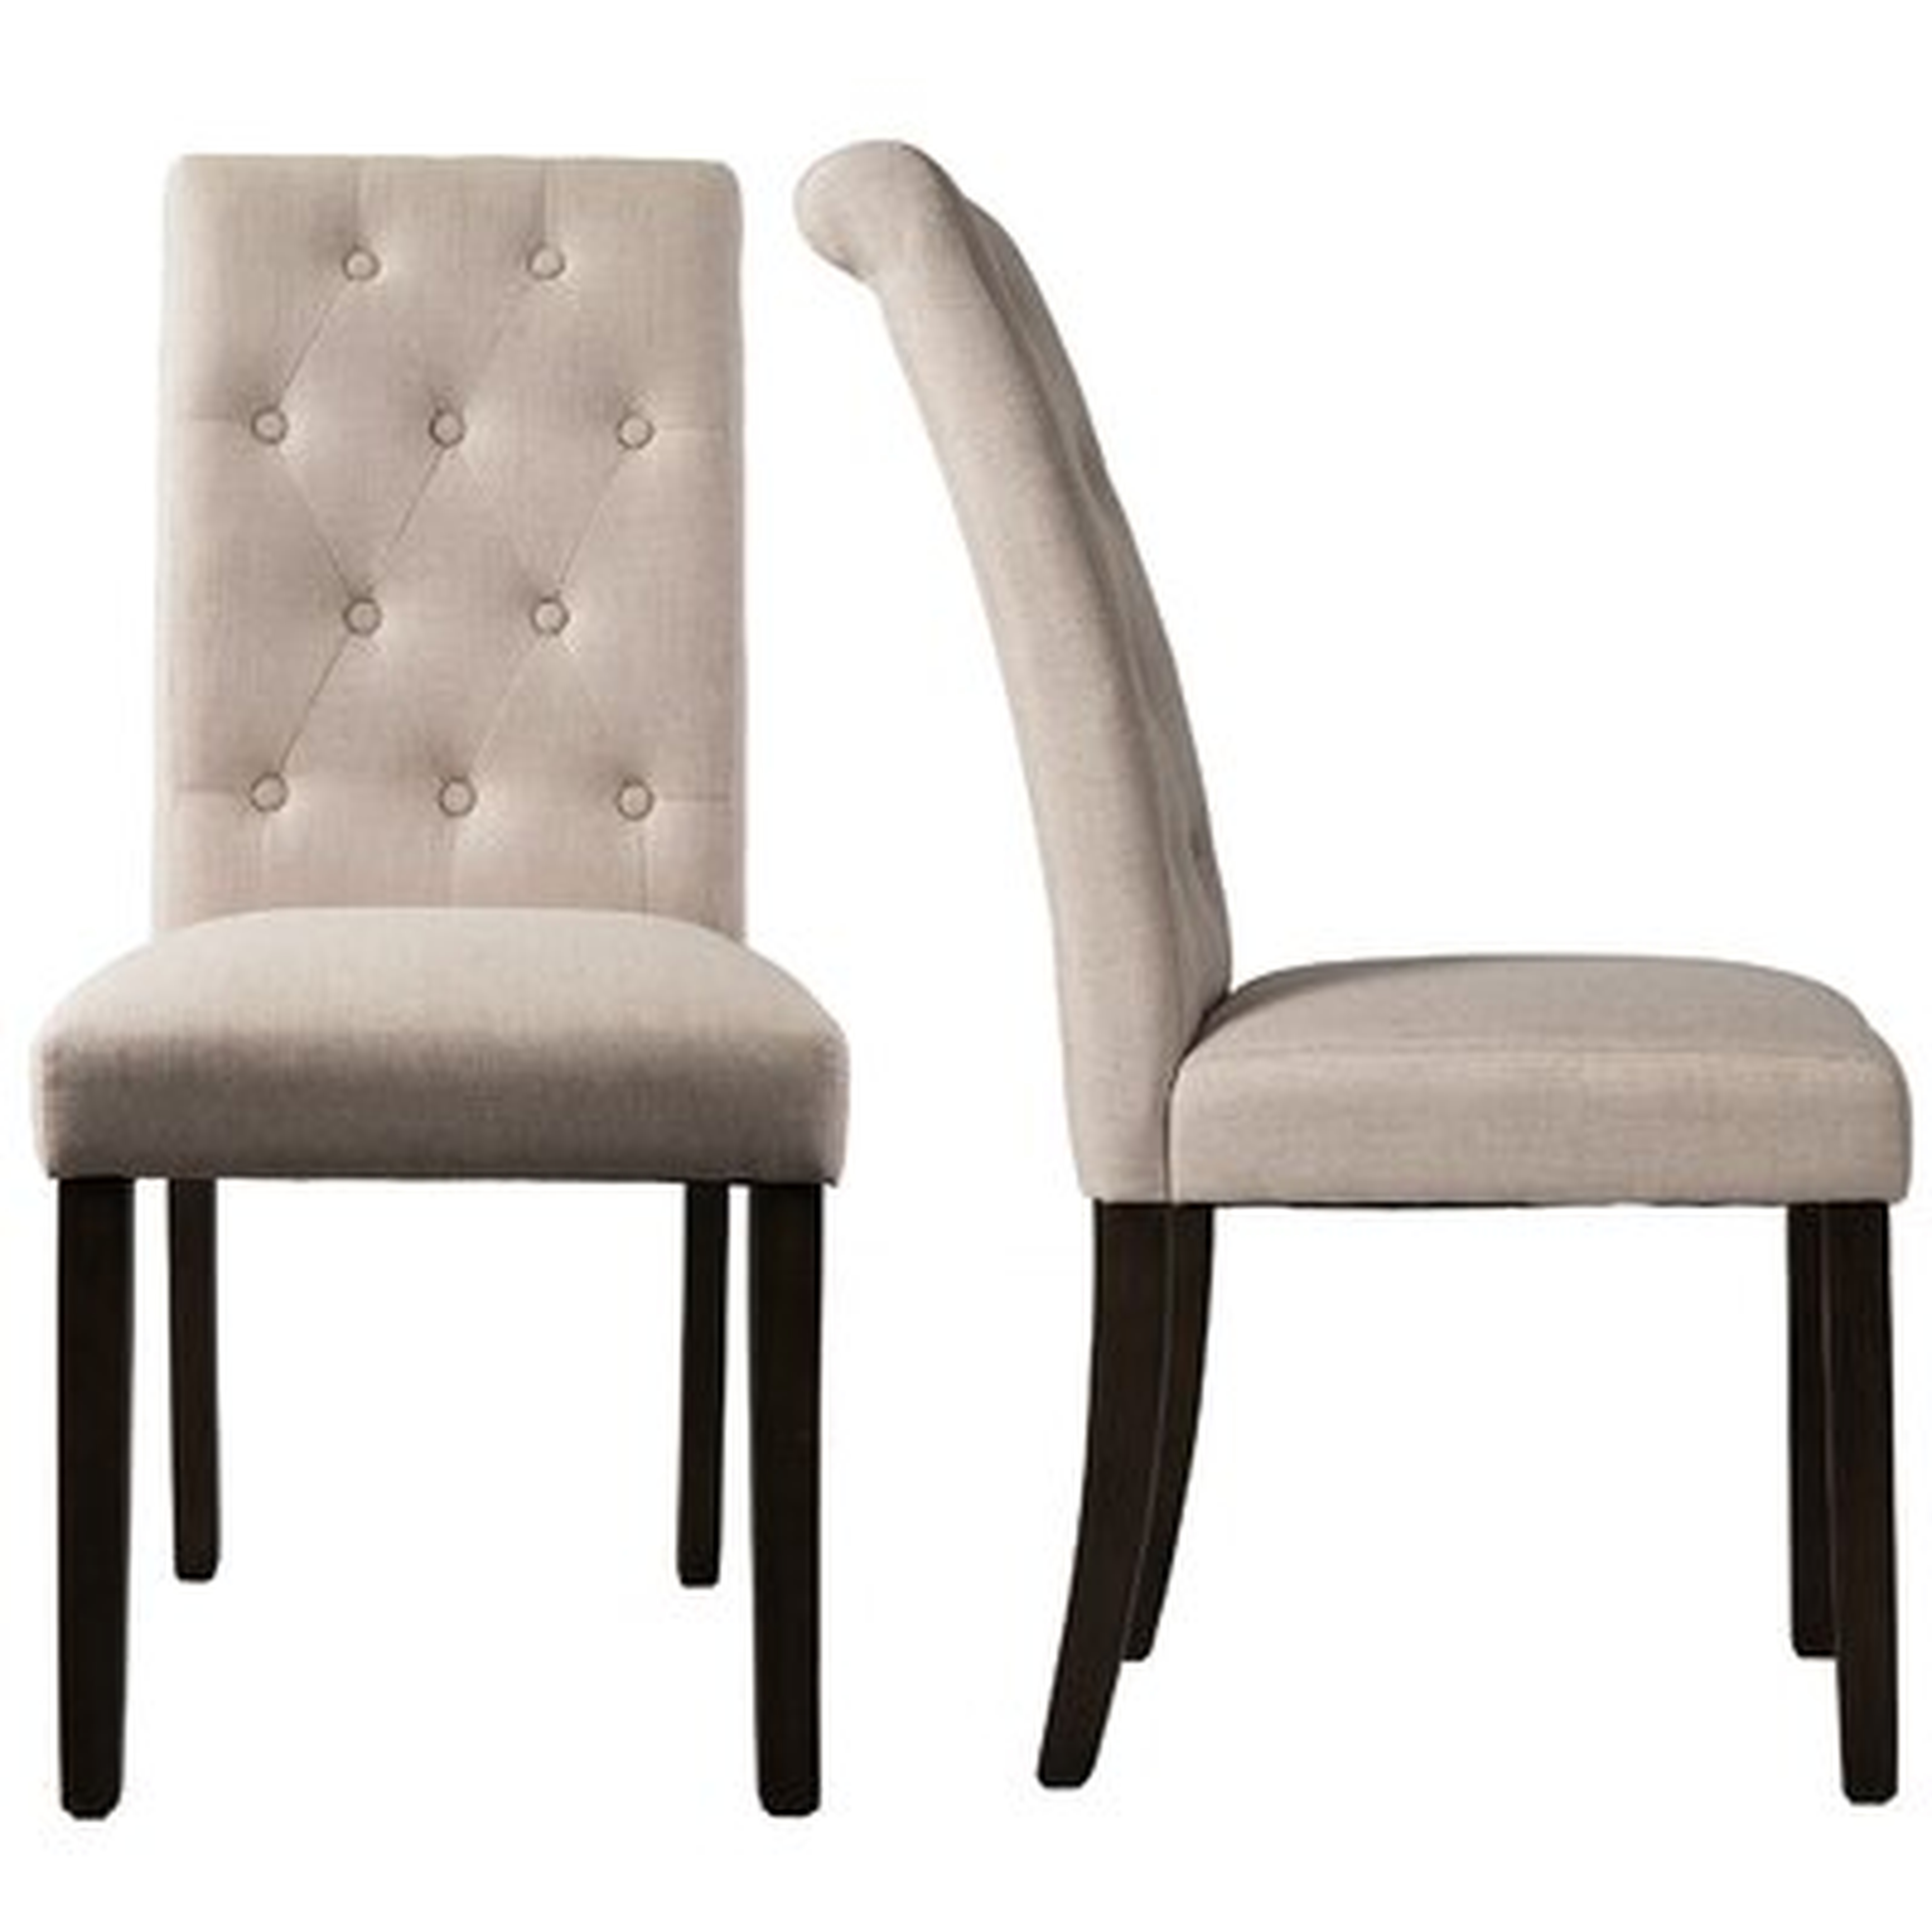 Klar Upholstered Dining Chair - Wayfair